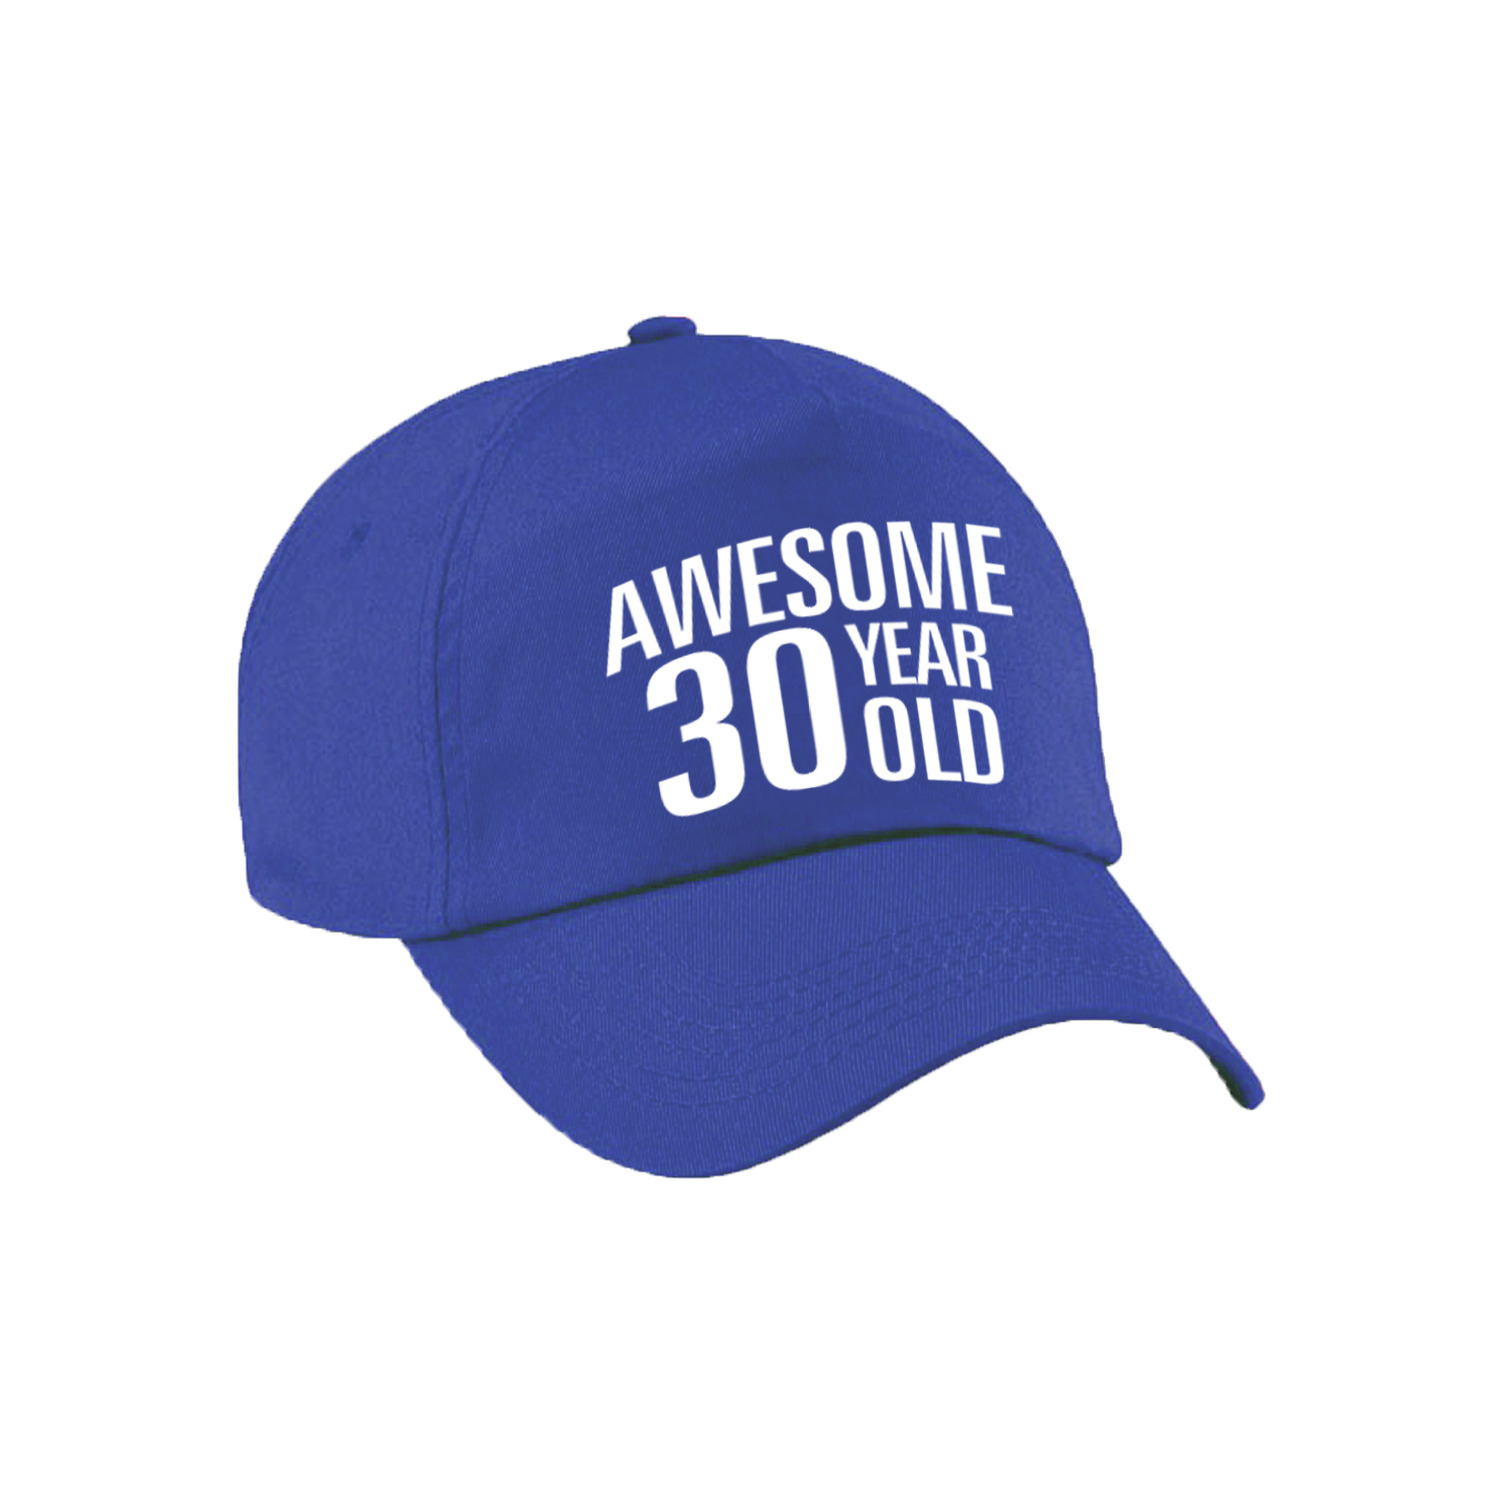 Awesome 30 year old verjaardag pet-cap blauw voor dames en heren